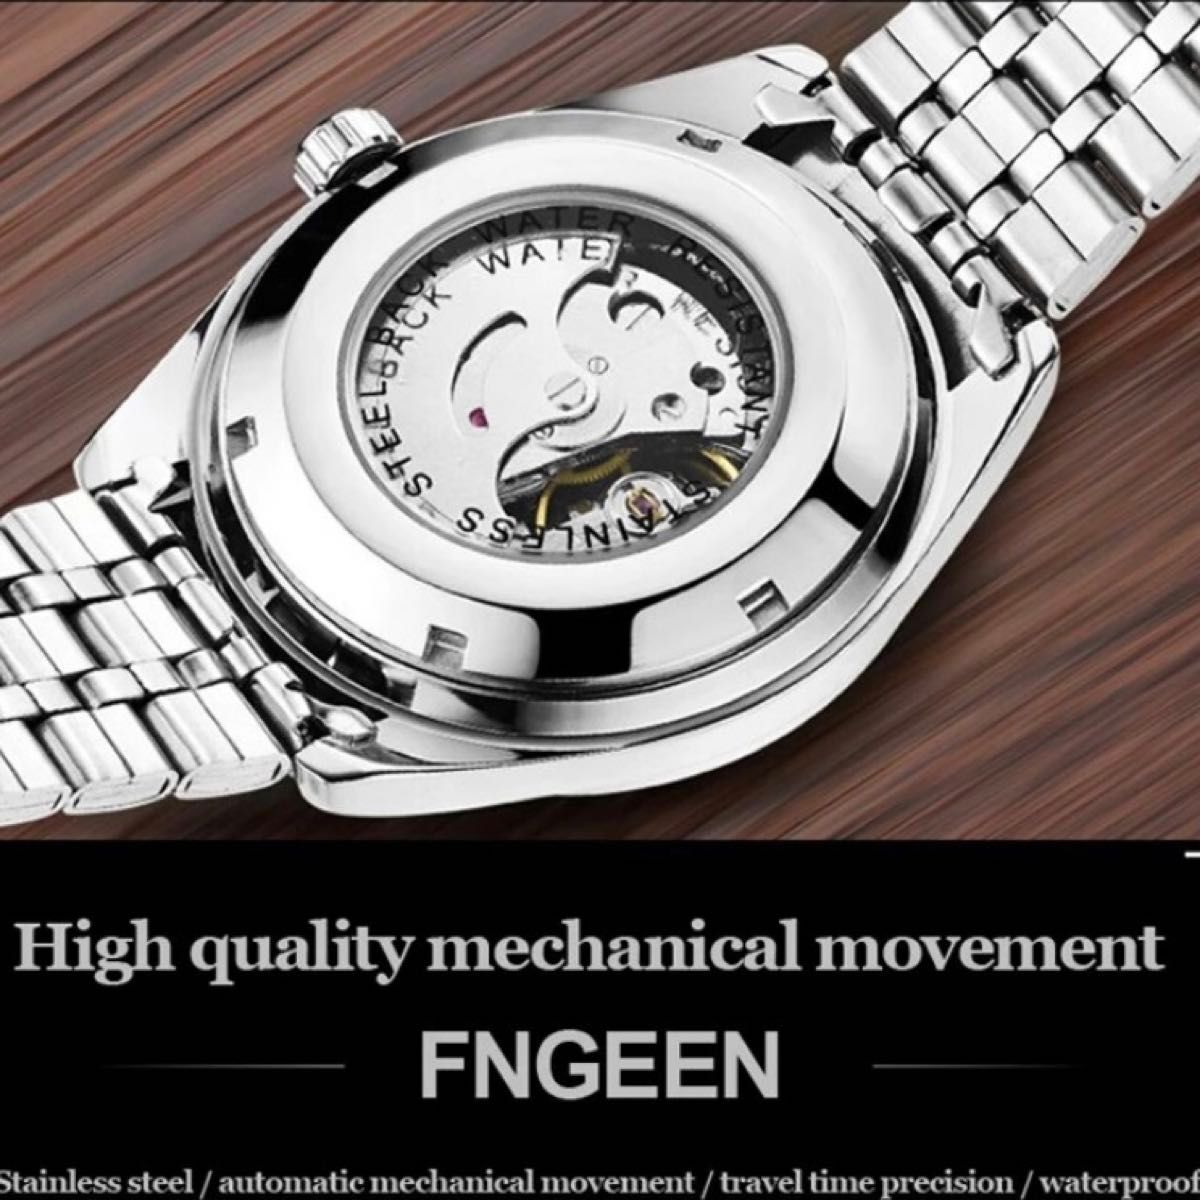 オリジナルブランドfngeen 男性用機械式腕時計、有名ブランド、高級、ステンレススチール、トゥールビヨン、自動巻き、カレンダー